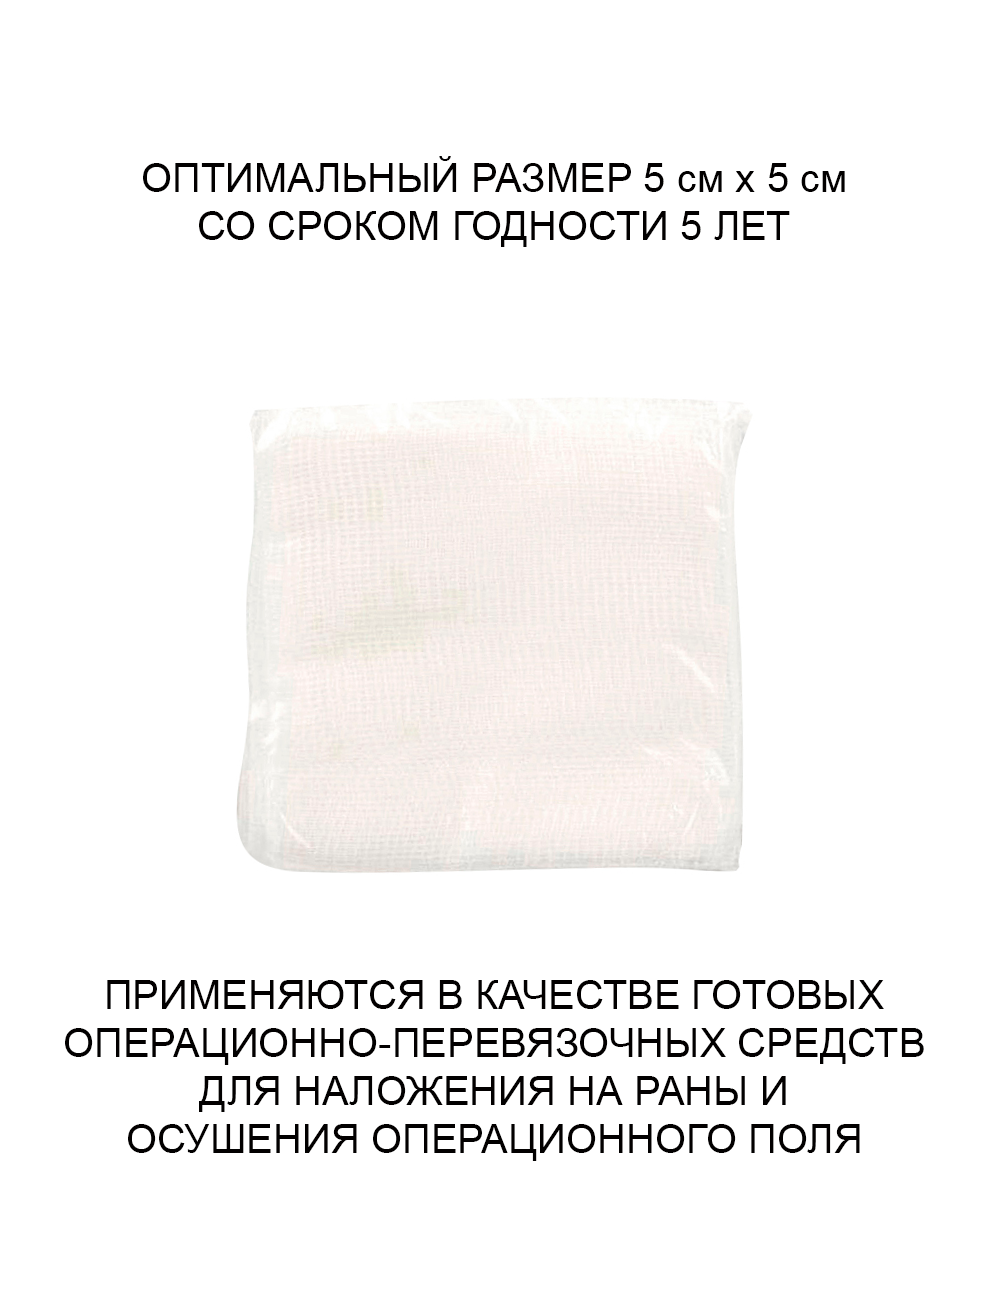 Салфетки марлевые Вариант медицинские стерильные 5х5см Евро Премиум инд. уп. №10, 3 упаковки в наборе